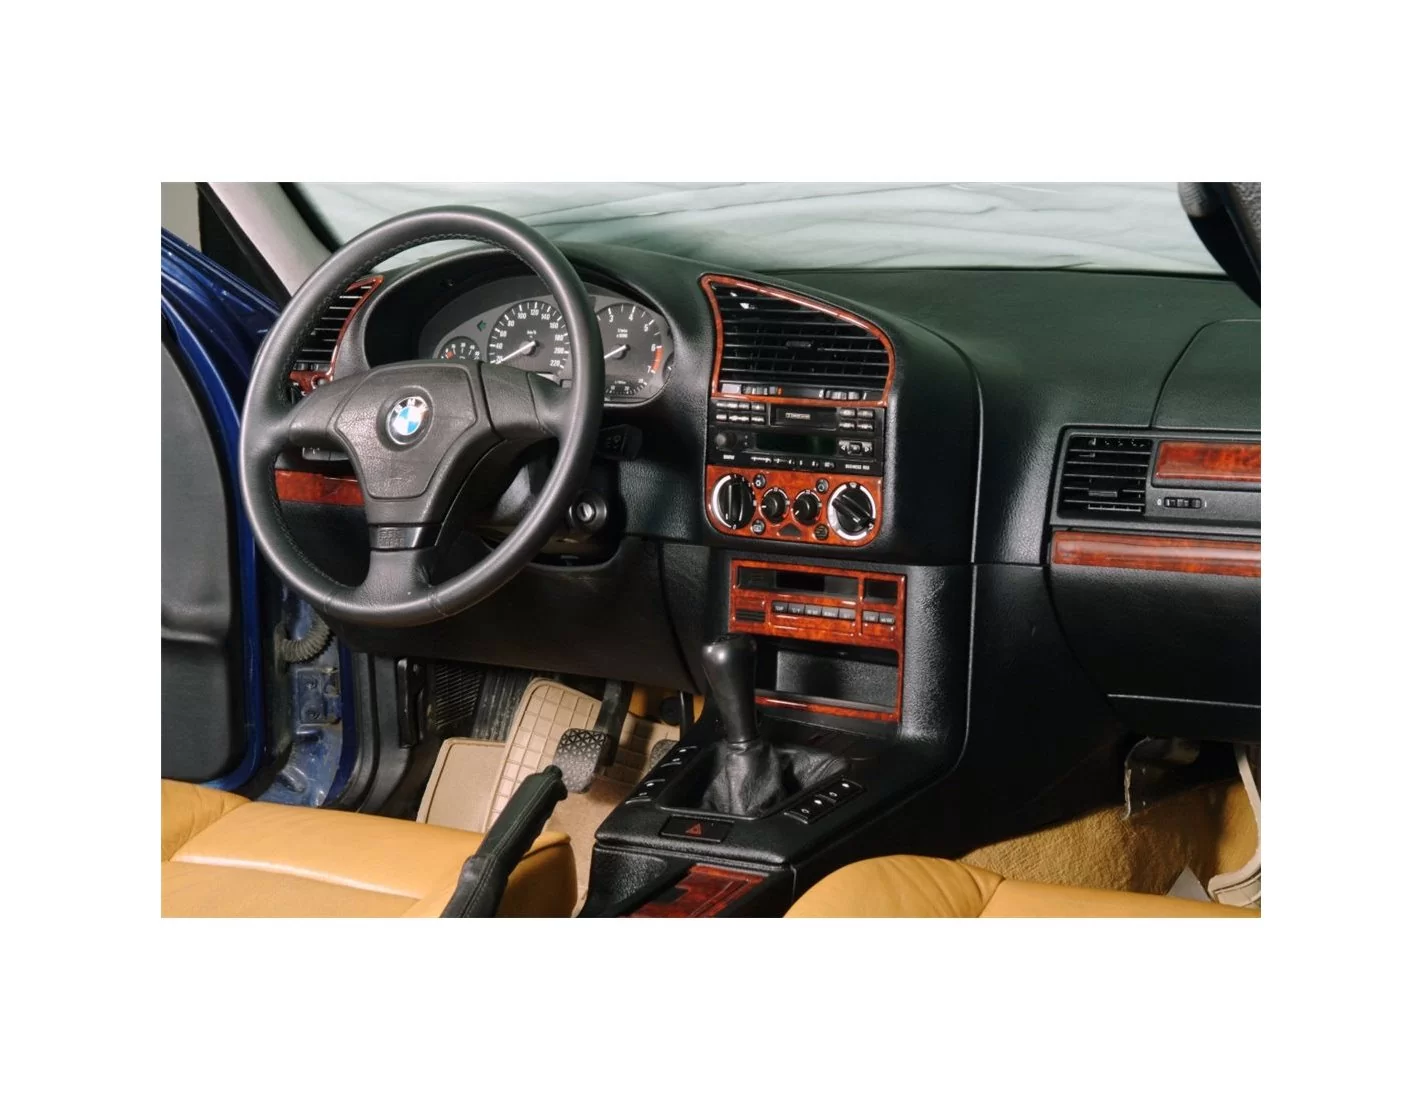 BMW 3 Series E36 91-98 Mittelkonsole Armaturendekor Cockpit Dekor 20-Teilige - 1- Cockpit Dekor Innenraum